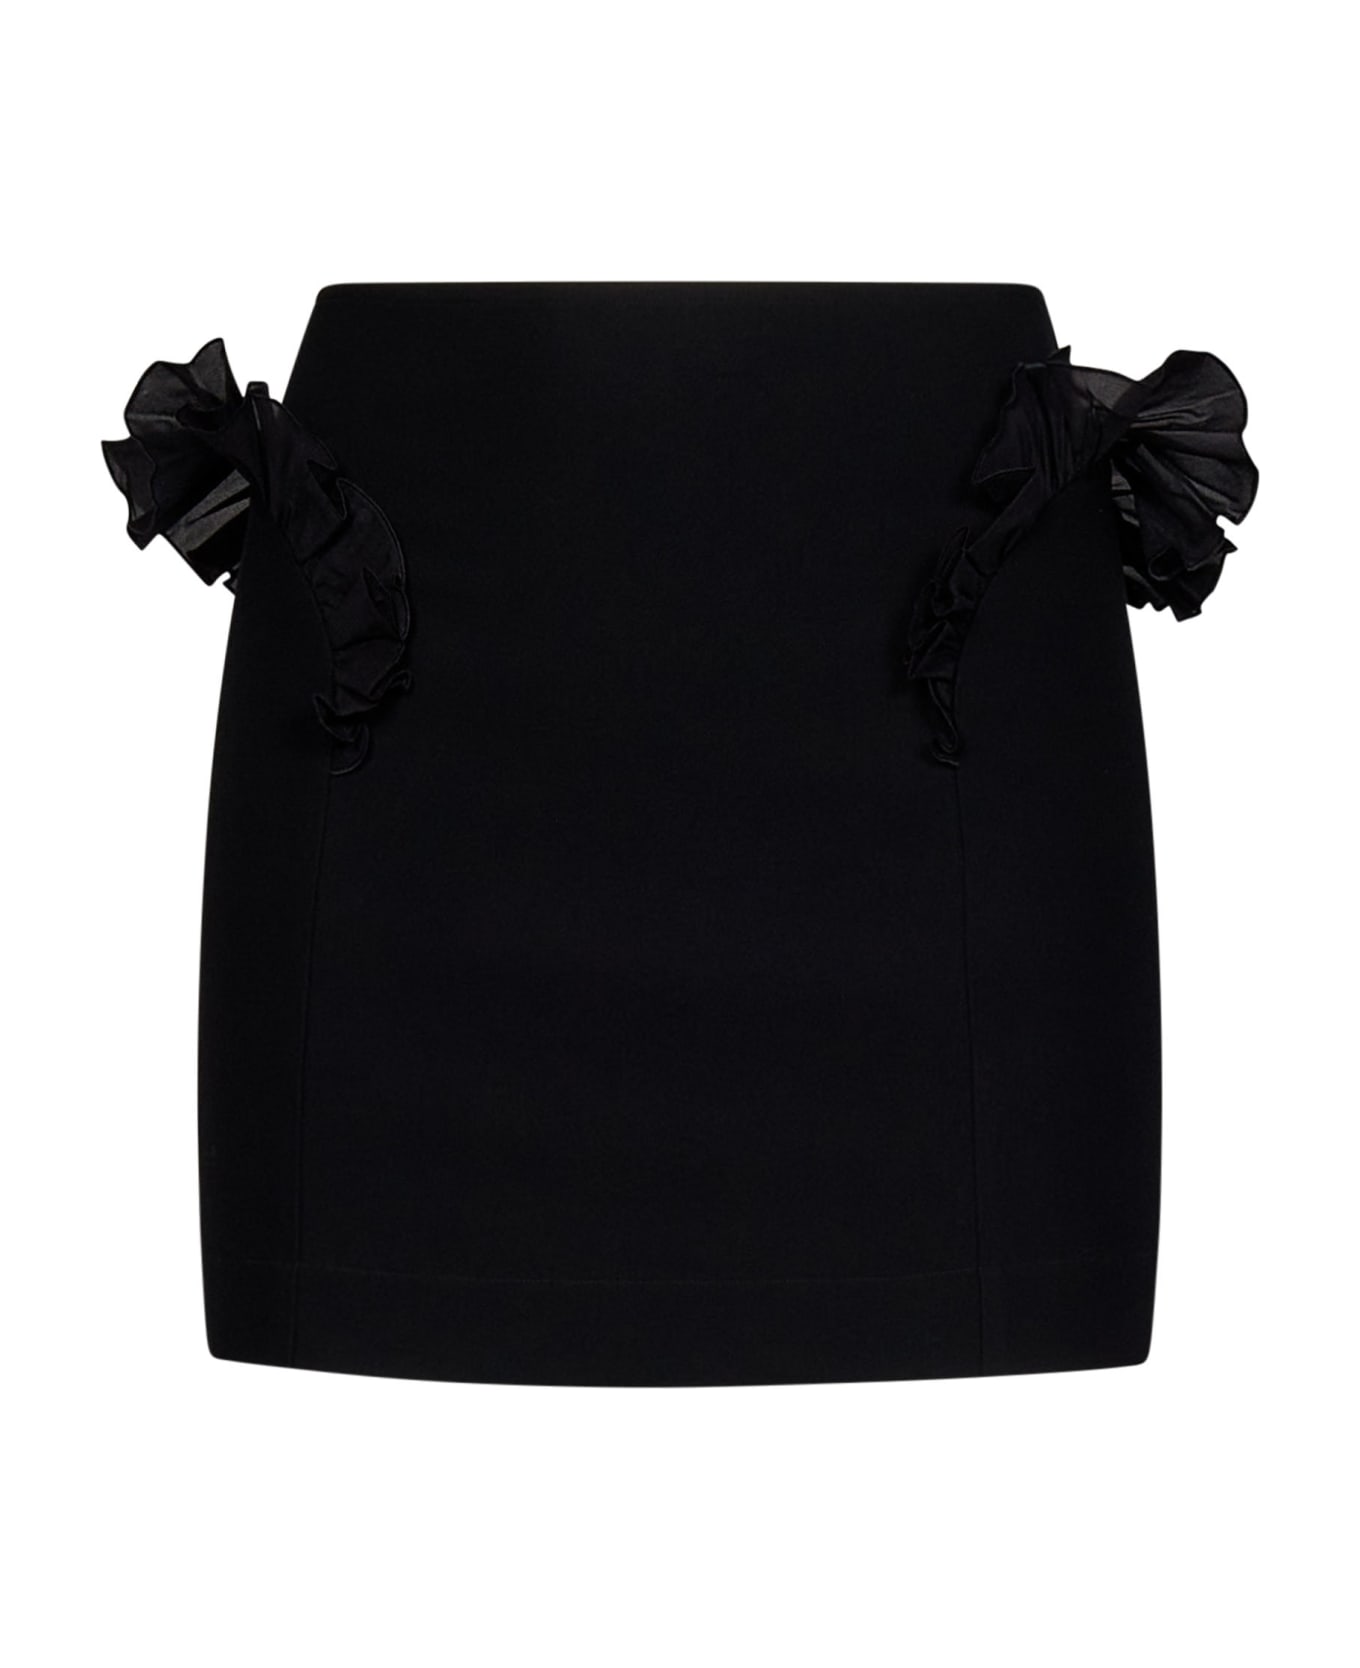 Nensi Dojaka Mini Skirt - BLACK